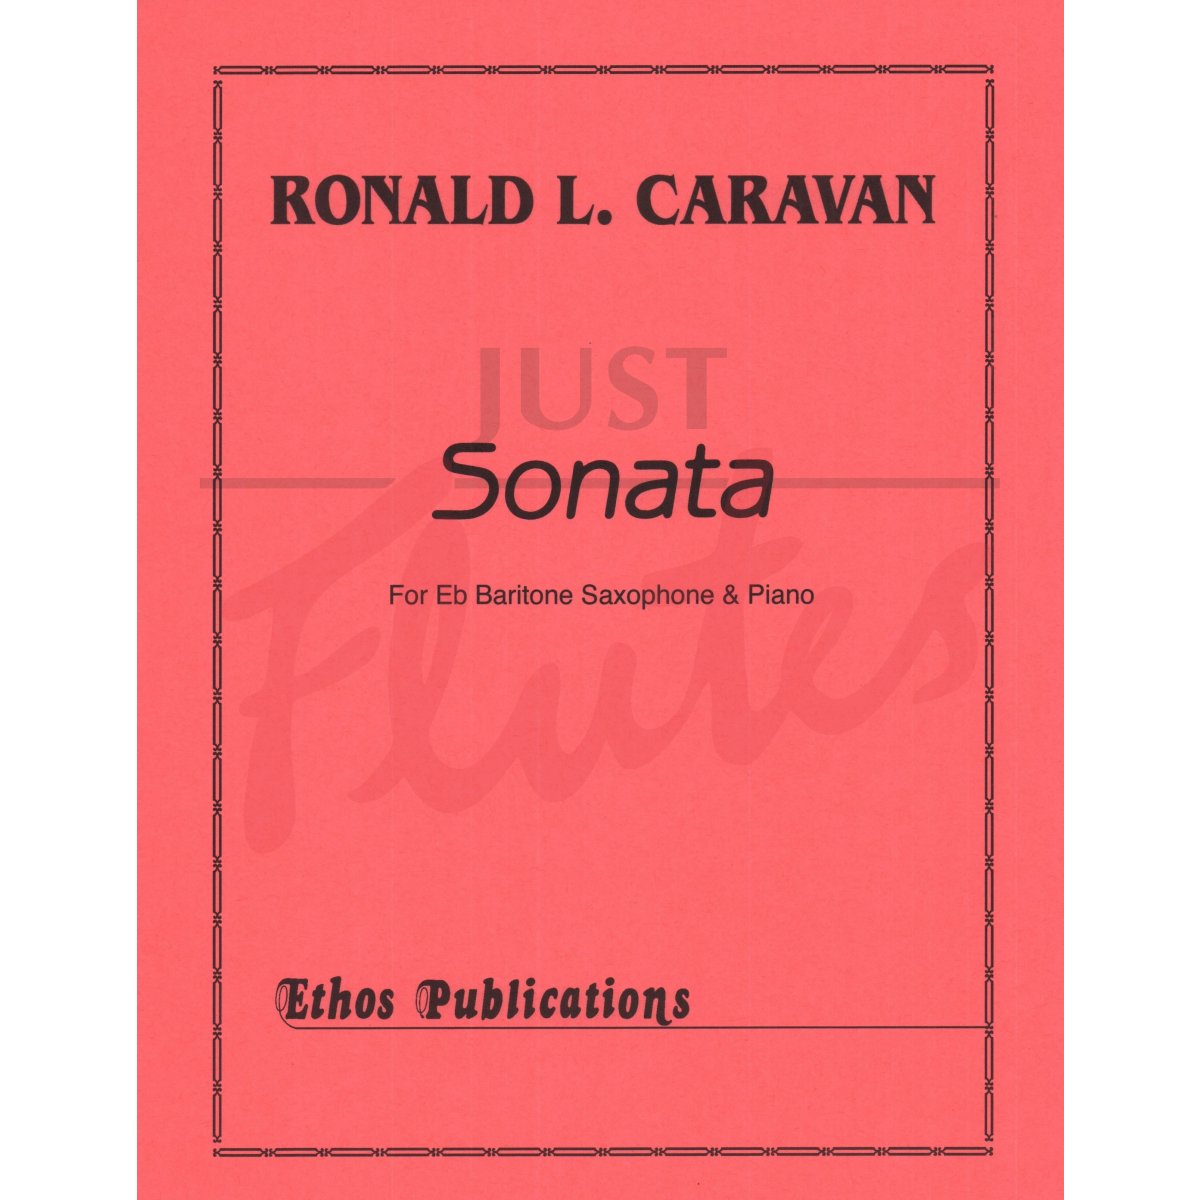 Sonata for Eb Baritone Saxophone and Piano